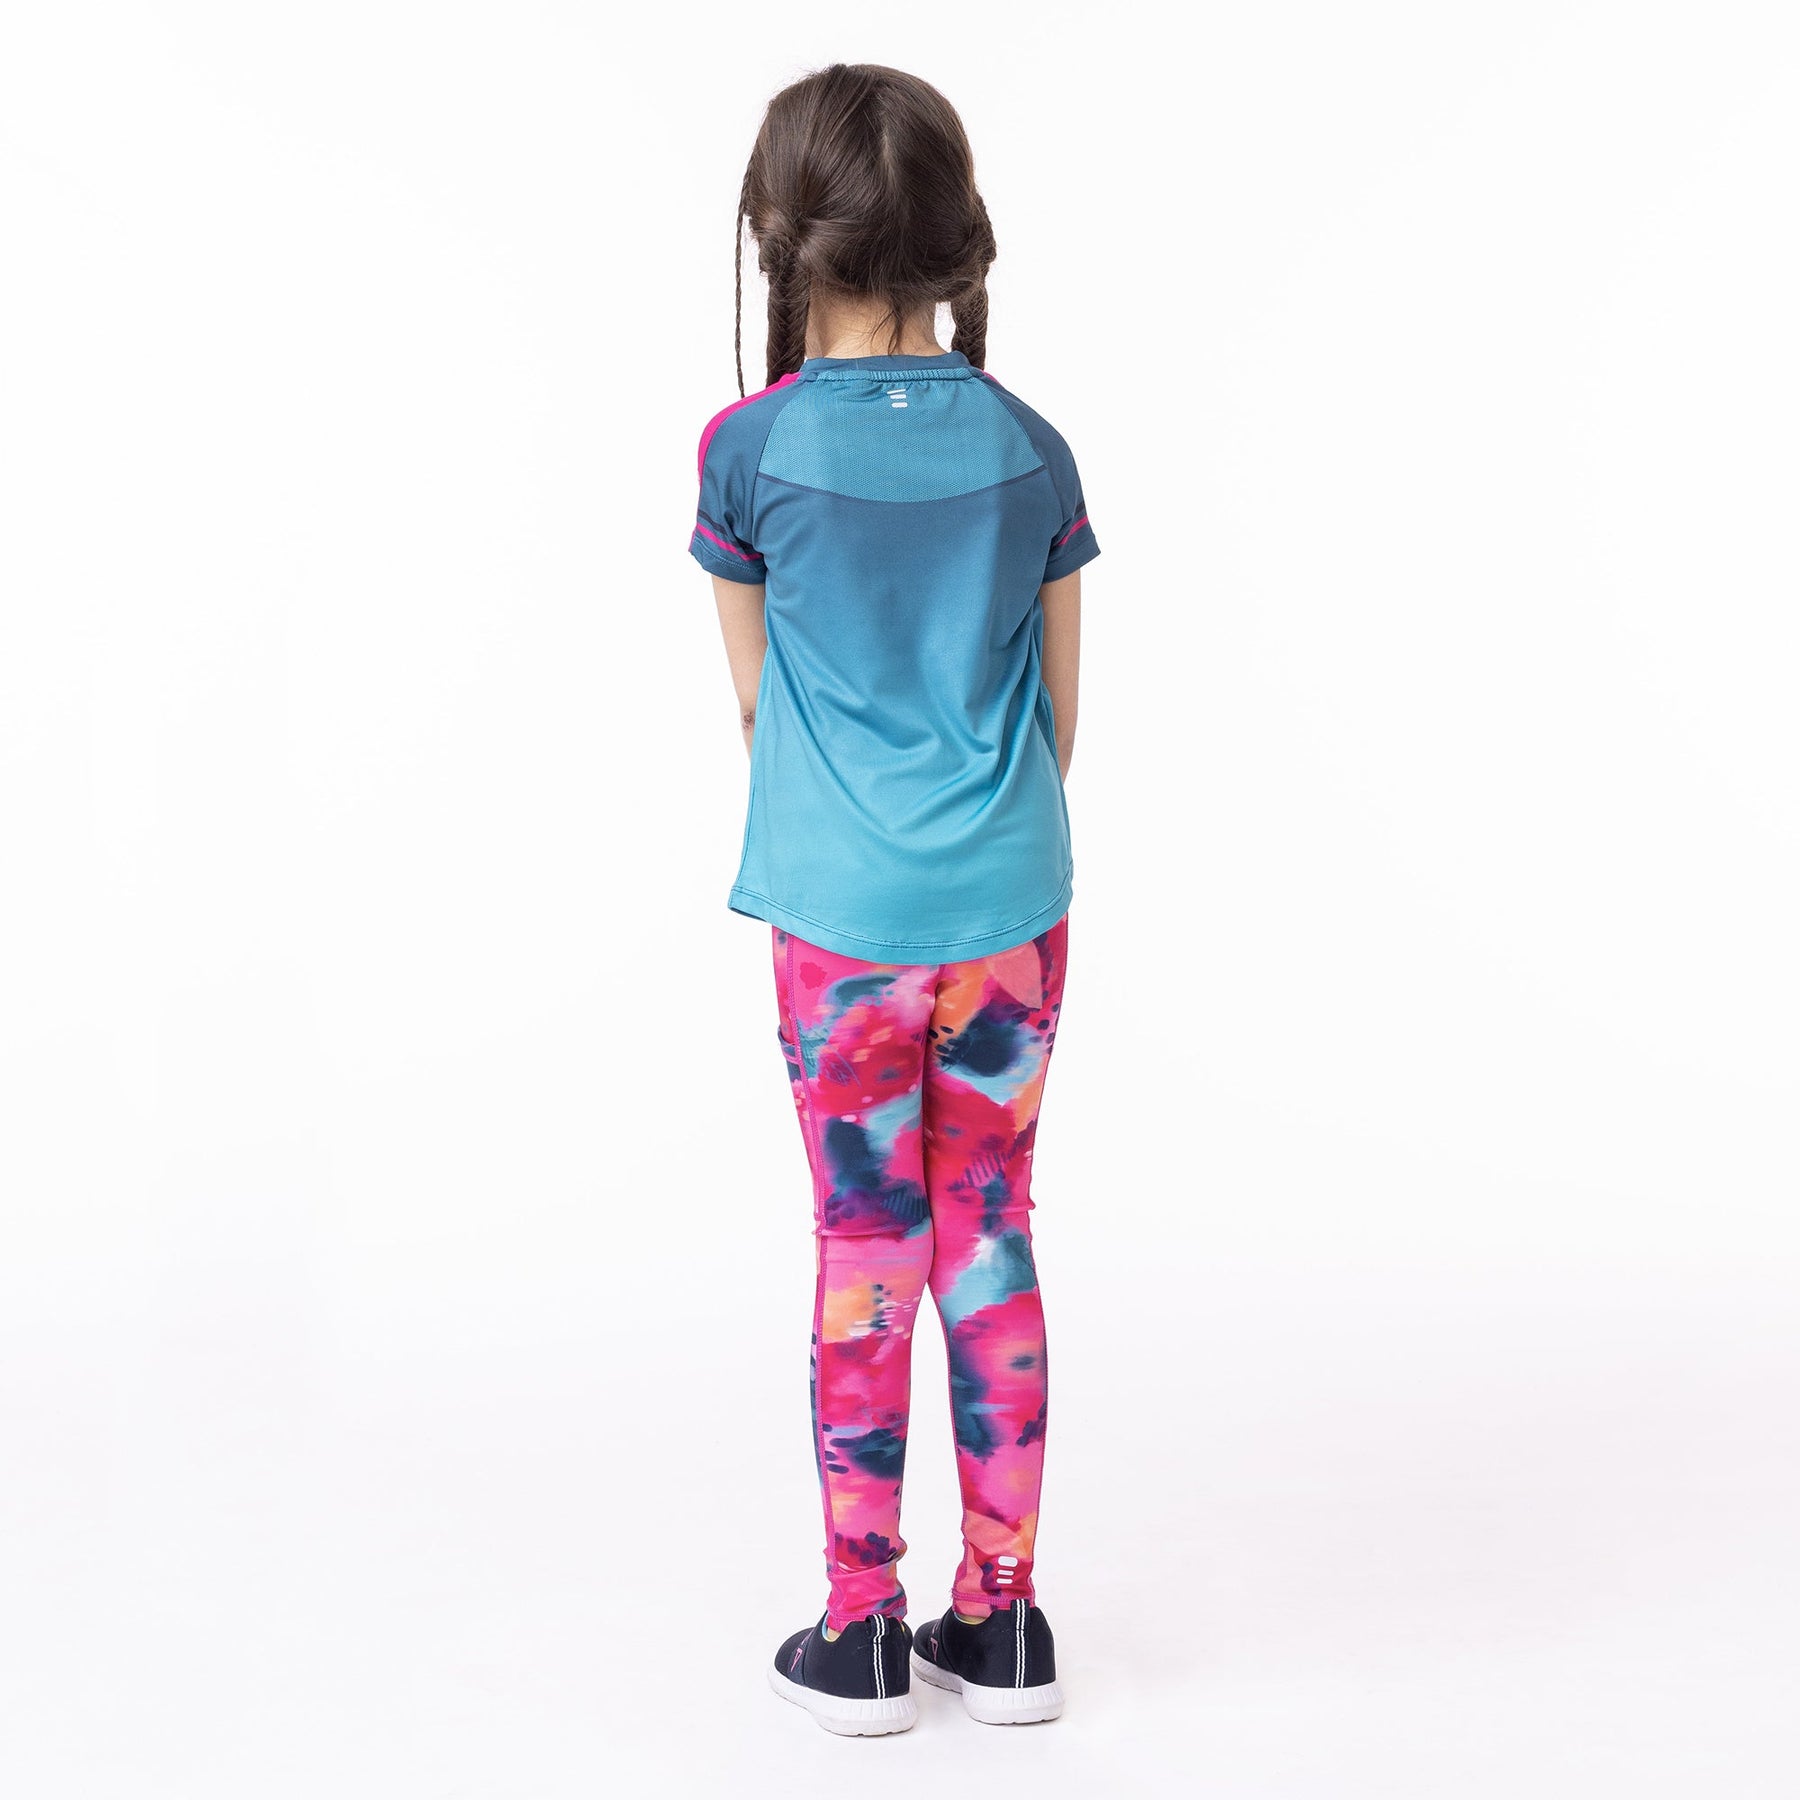 Legging athlétique pour enfant fille par Nanö | F23A82-02 Fuchsia | Boutique Flos, vêtements mode pour bébés et enfants